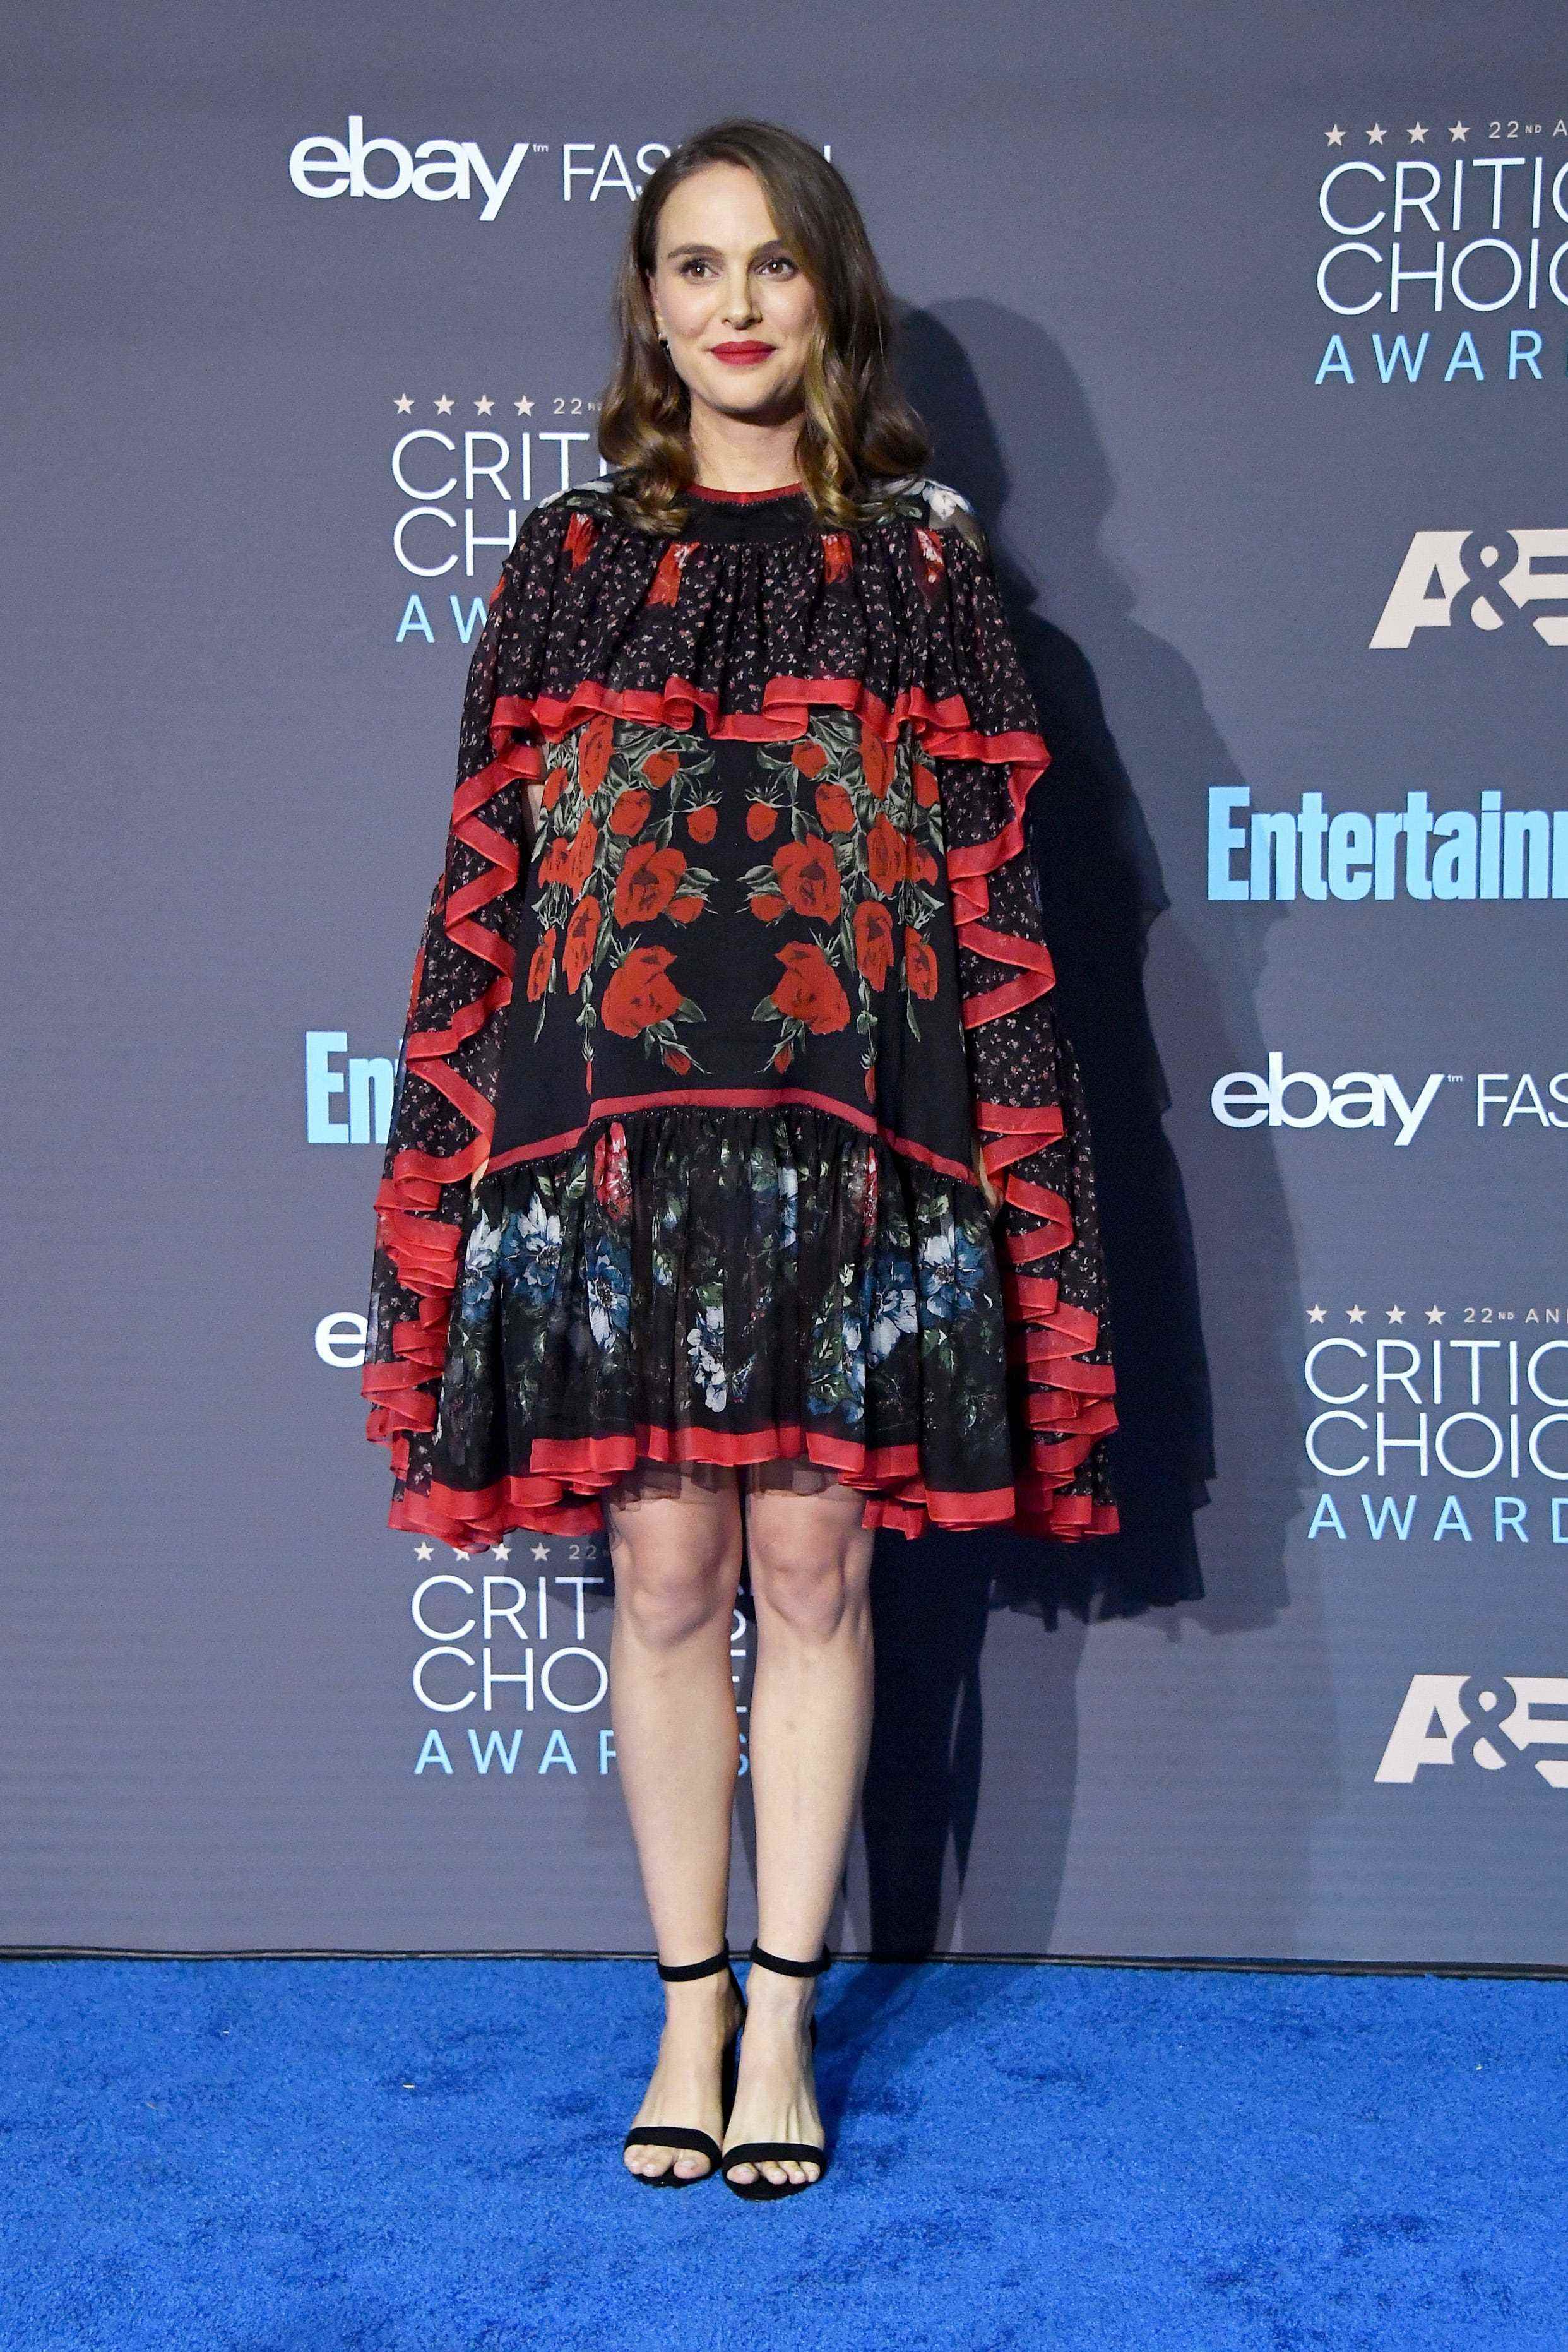 Natalie Portman in einem schwarz-roten Kleid auf einem blauen Teppich